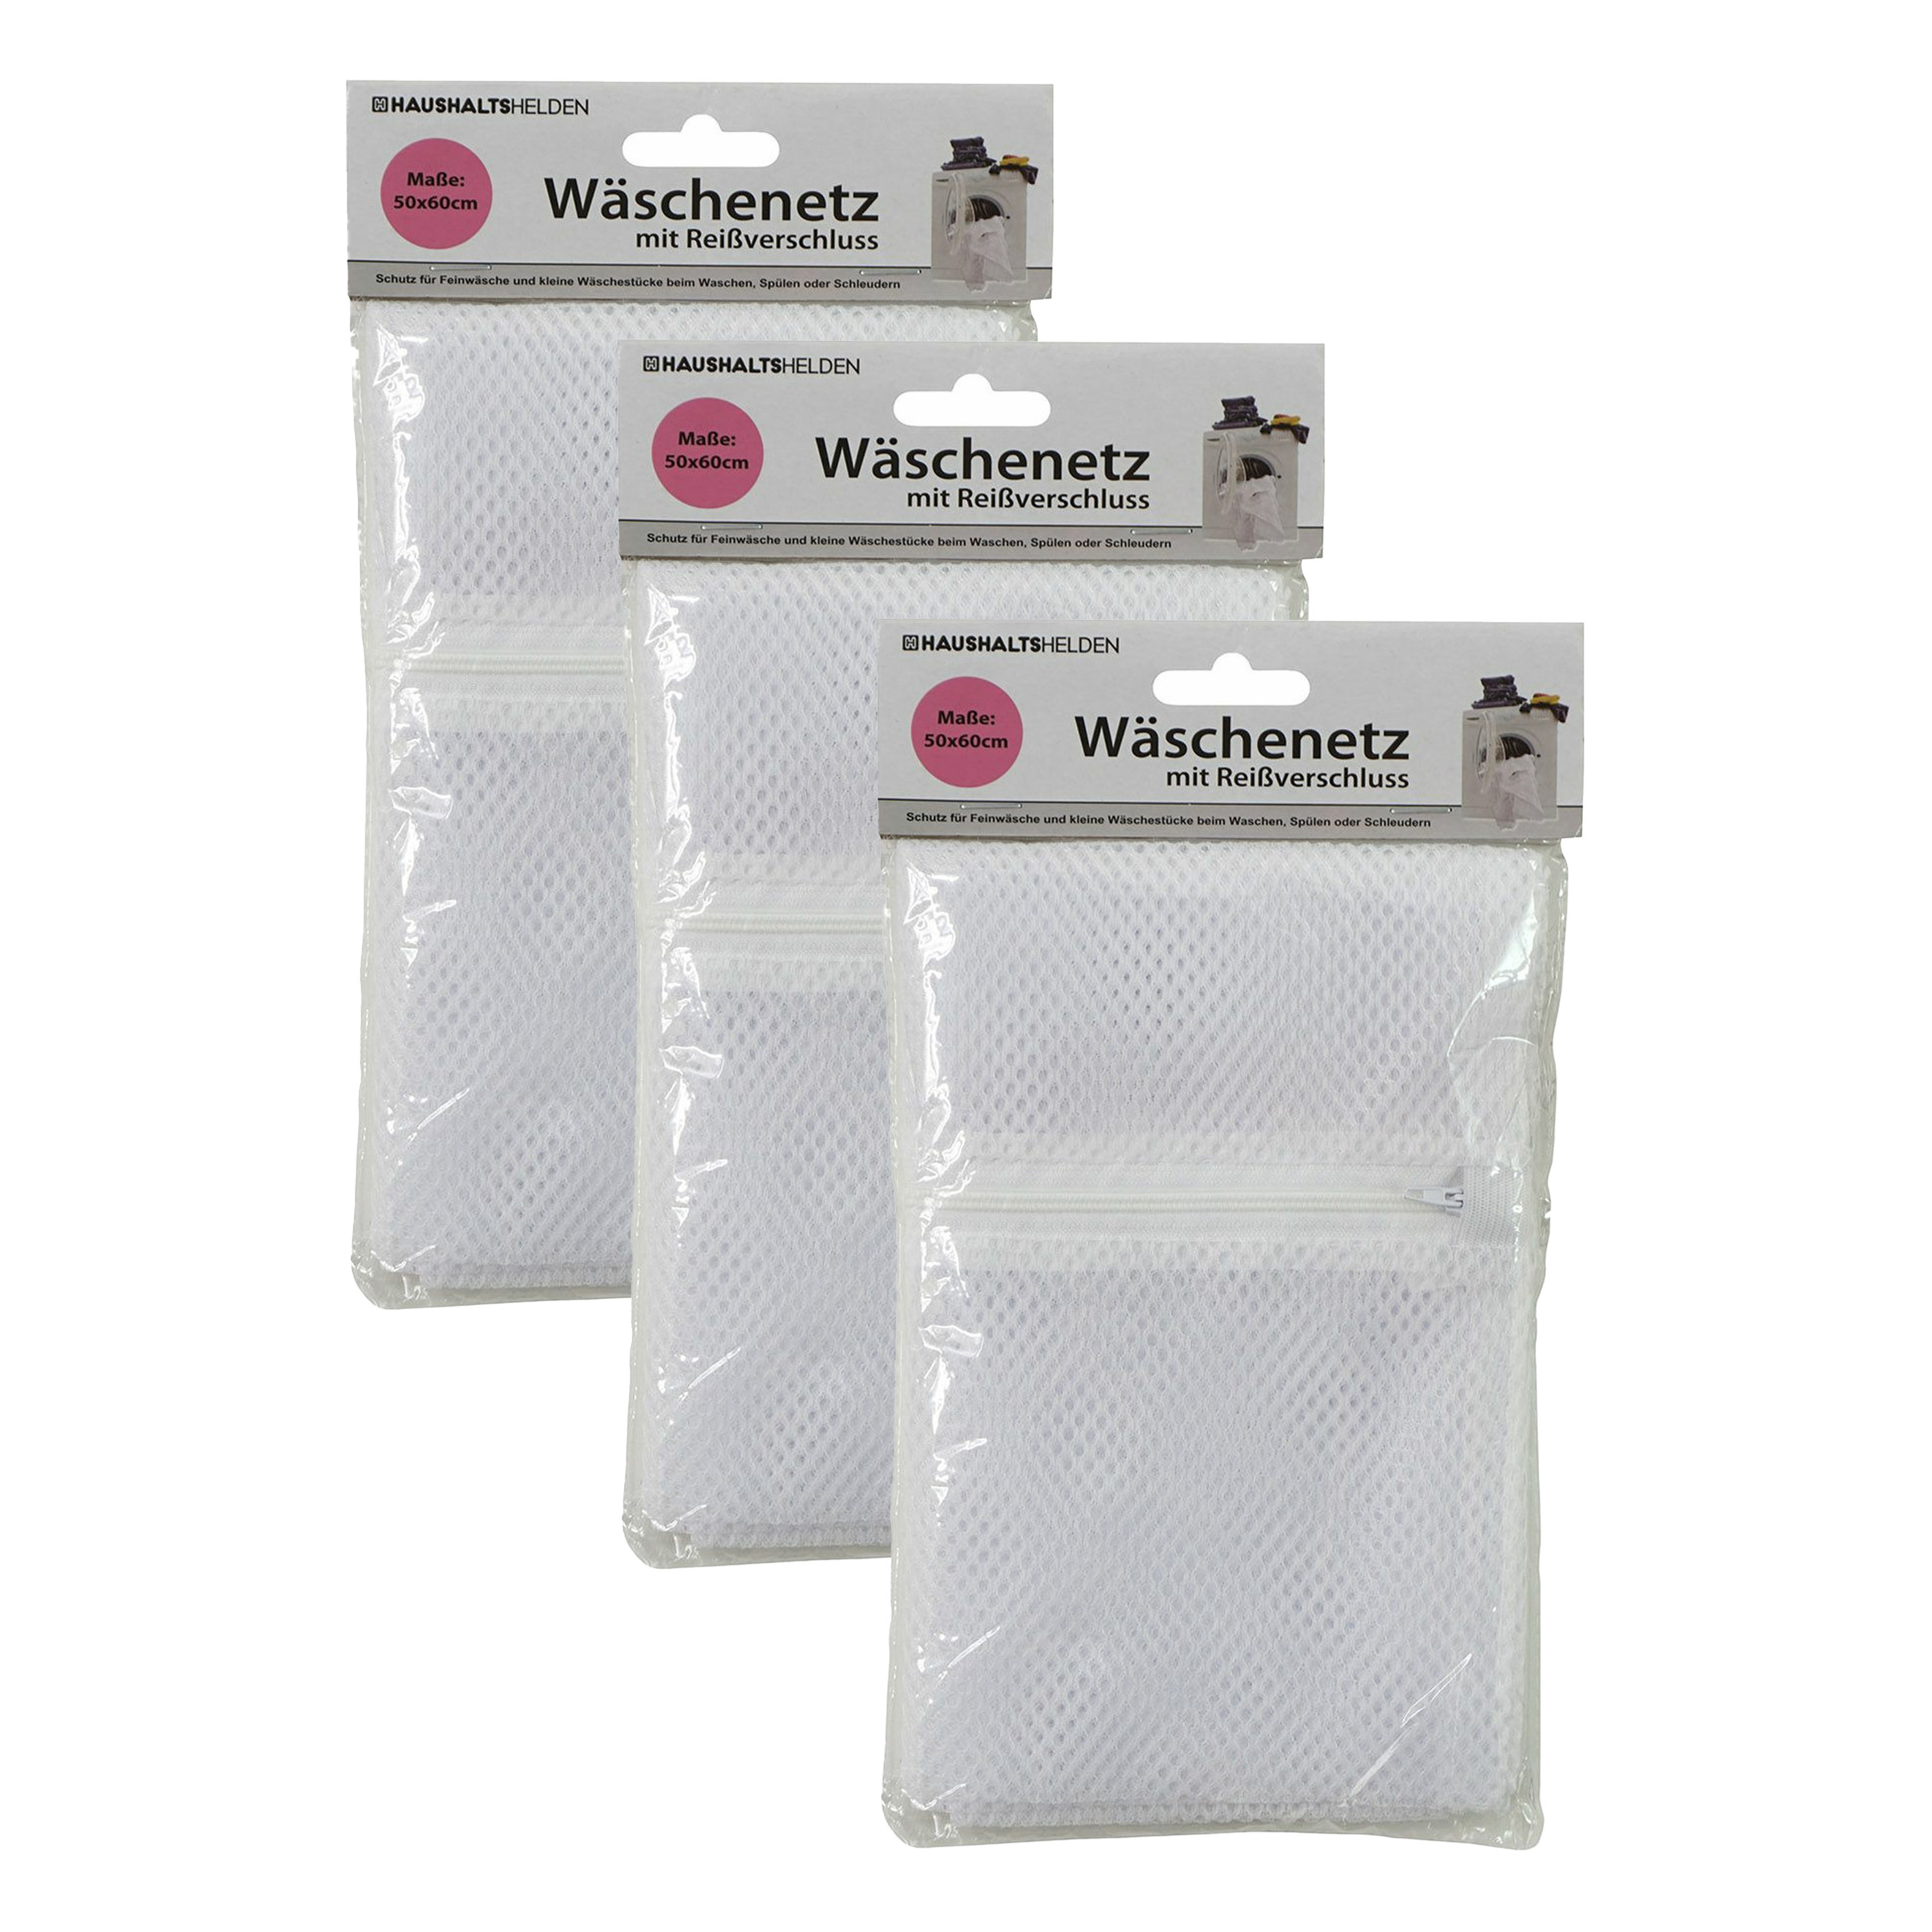 Waszak voor kwetsbare kleding wasgoed/waszak - 3x - wit - large size - 50 x 60 cm